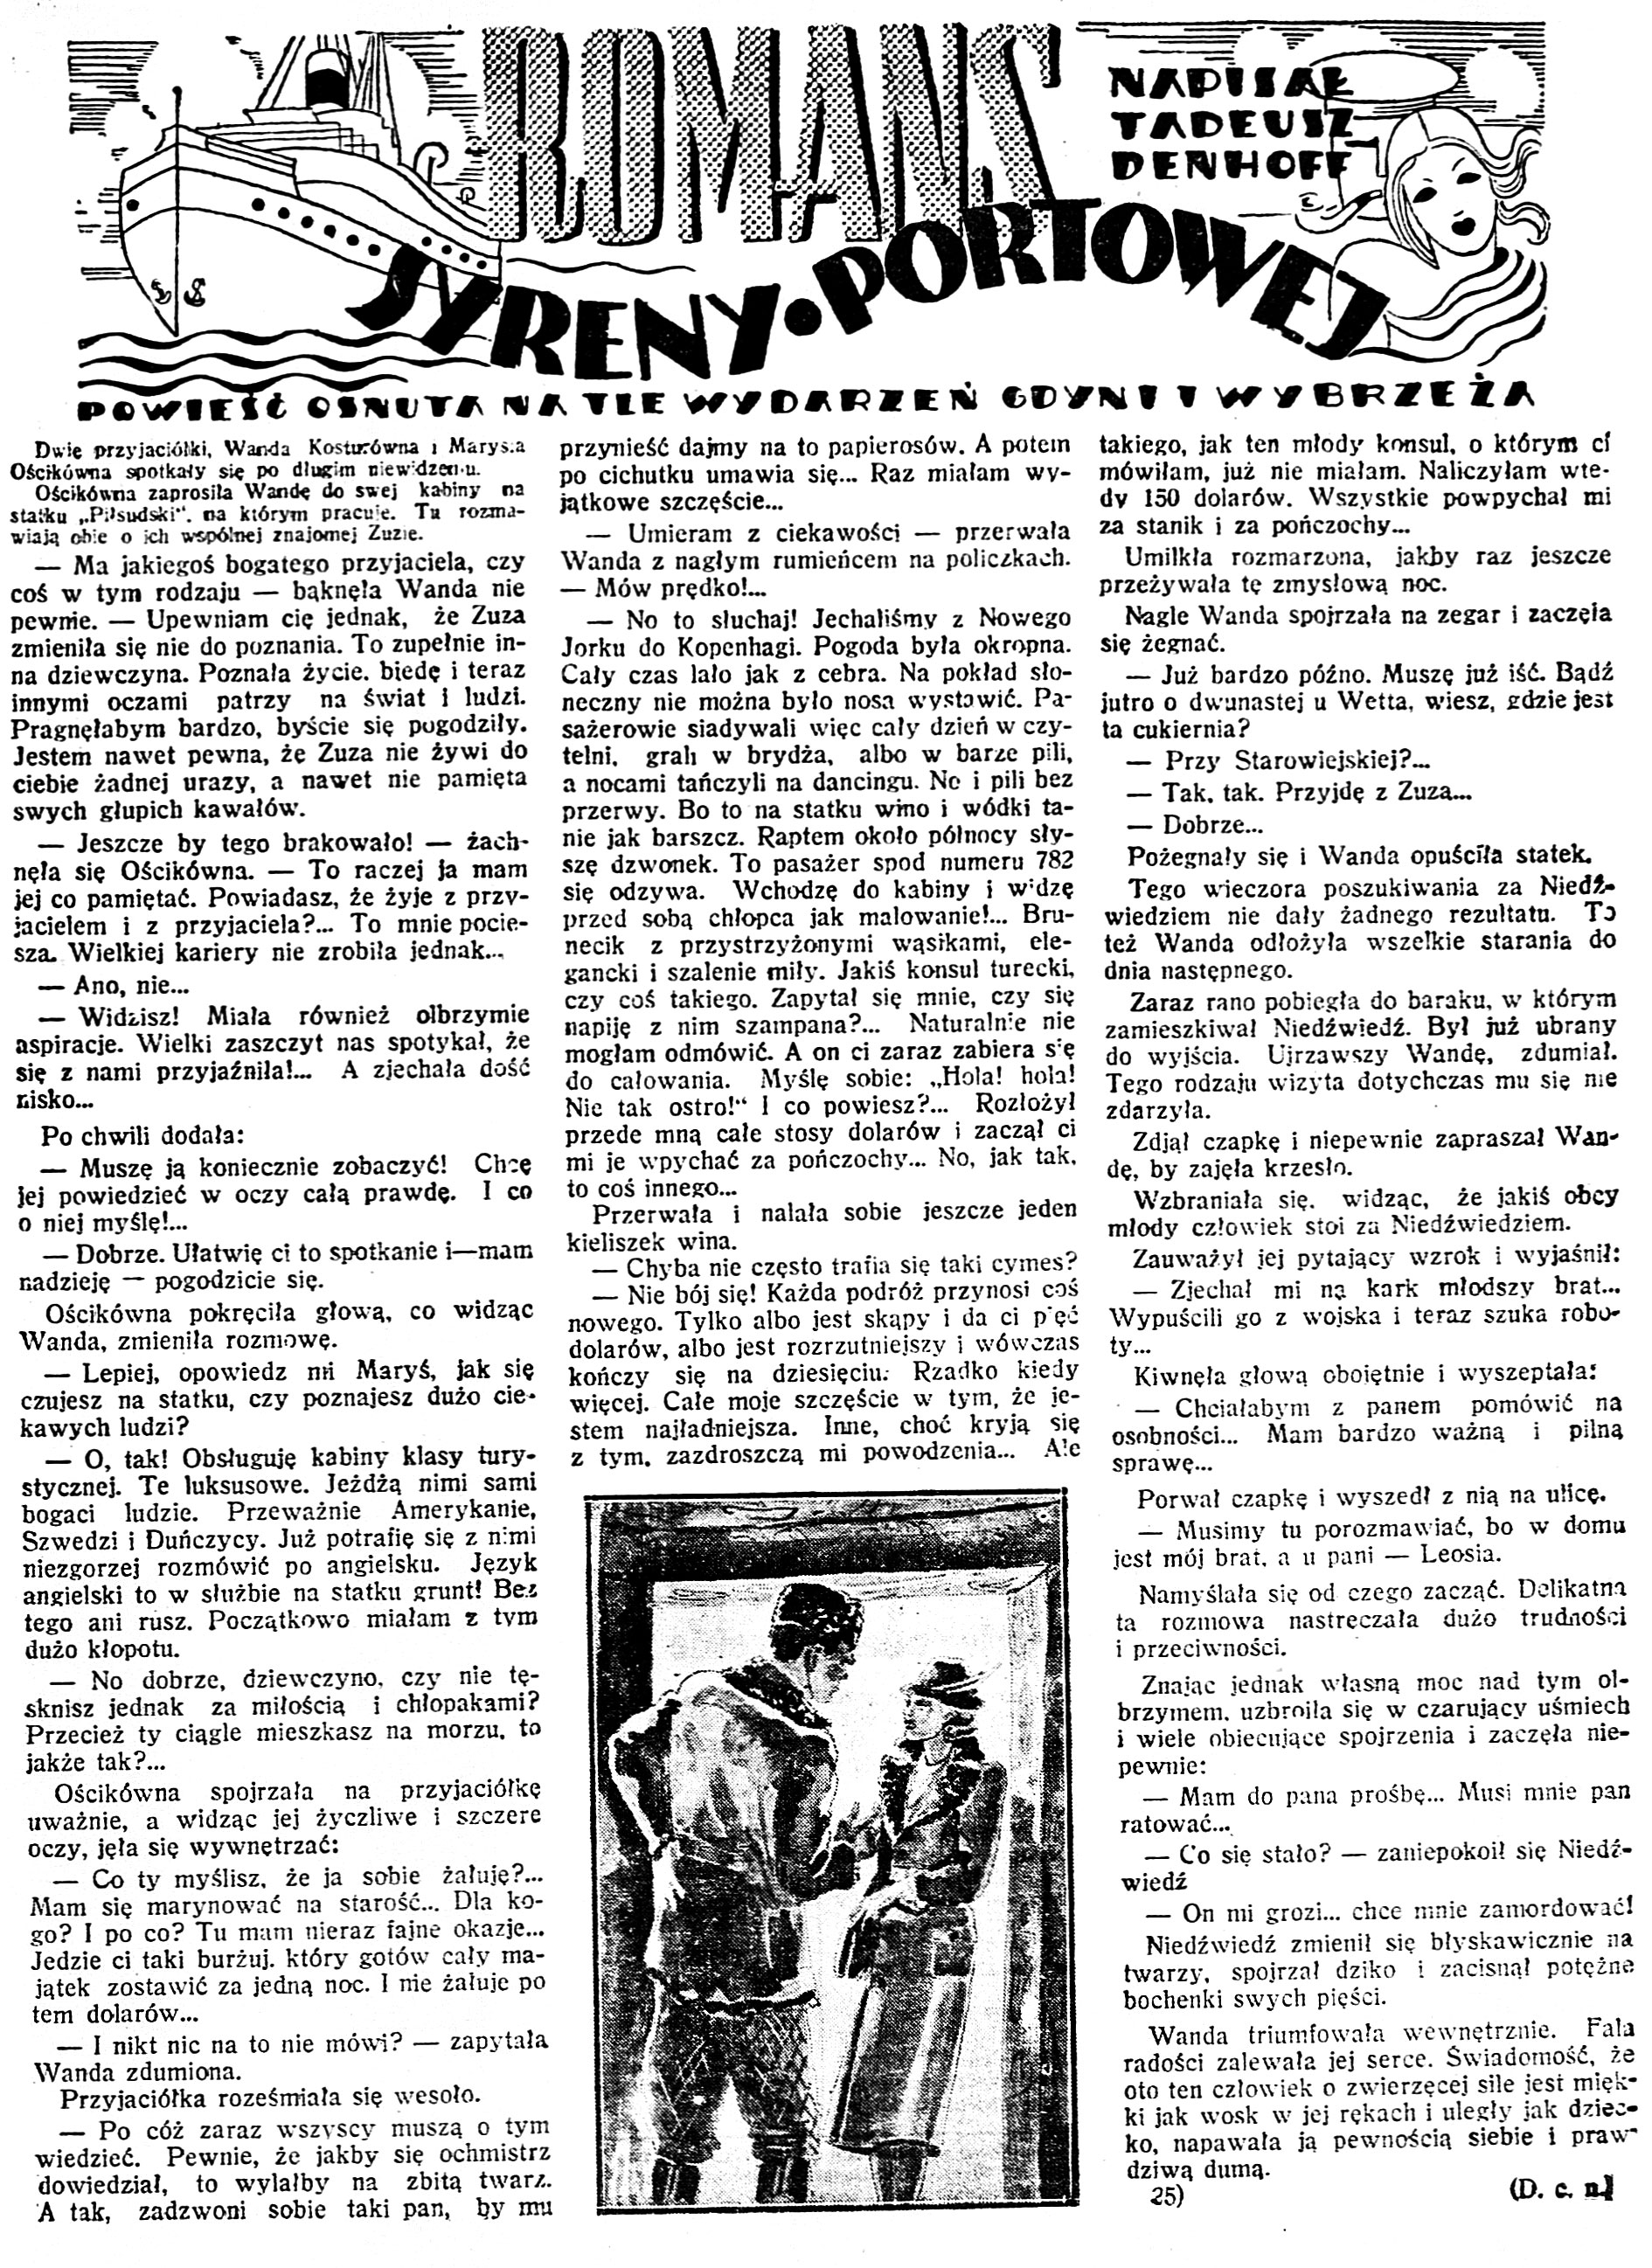 Romans syreny portowej / Tadeusz Denhoff // Dzień Dobry. - 1938, nr 33, s. 11